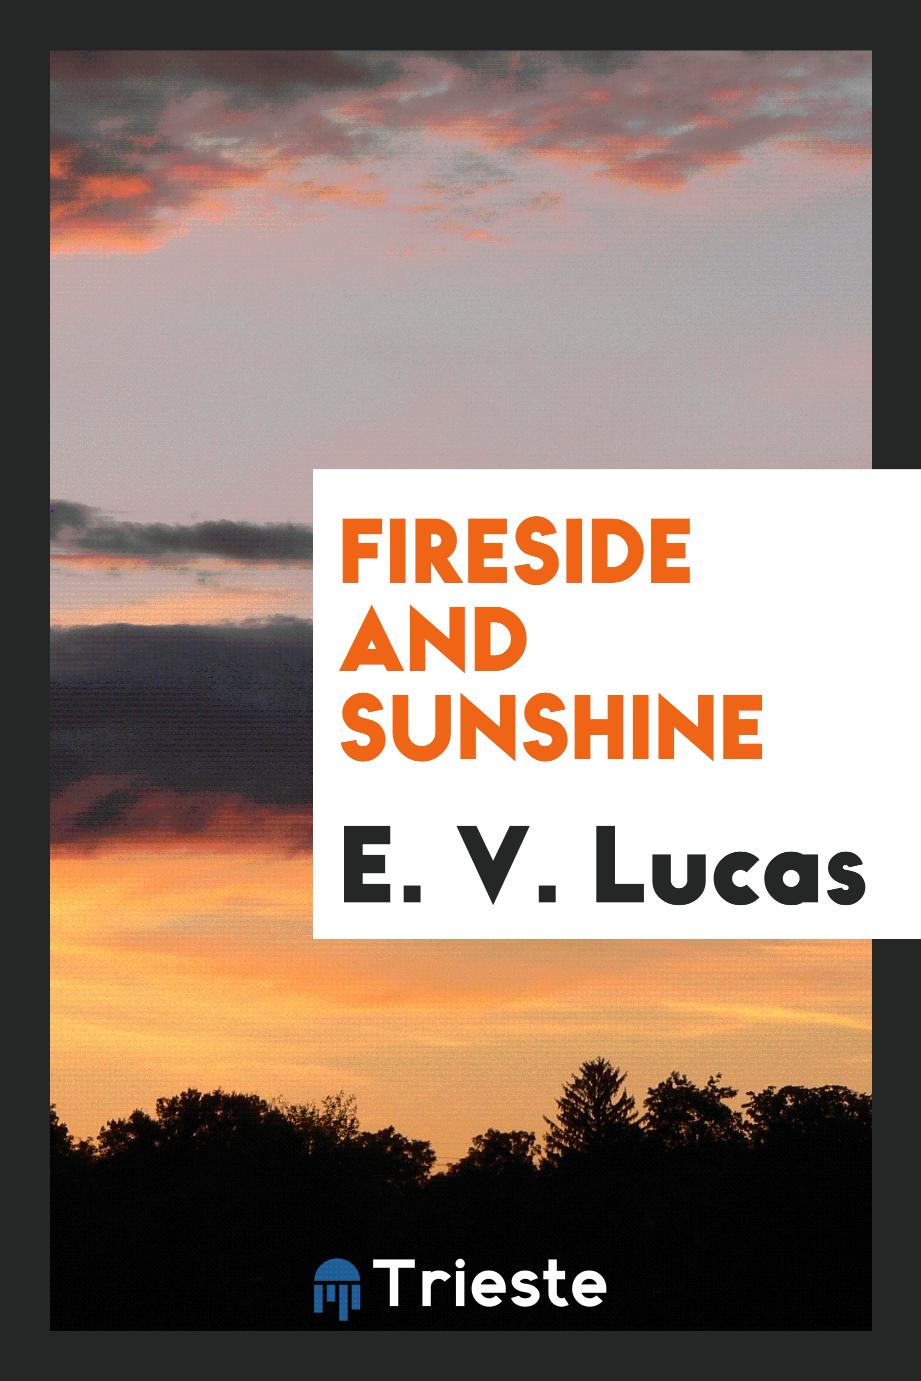 E. V. Lucas - Fireside and sunshine